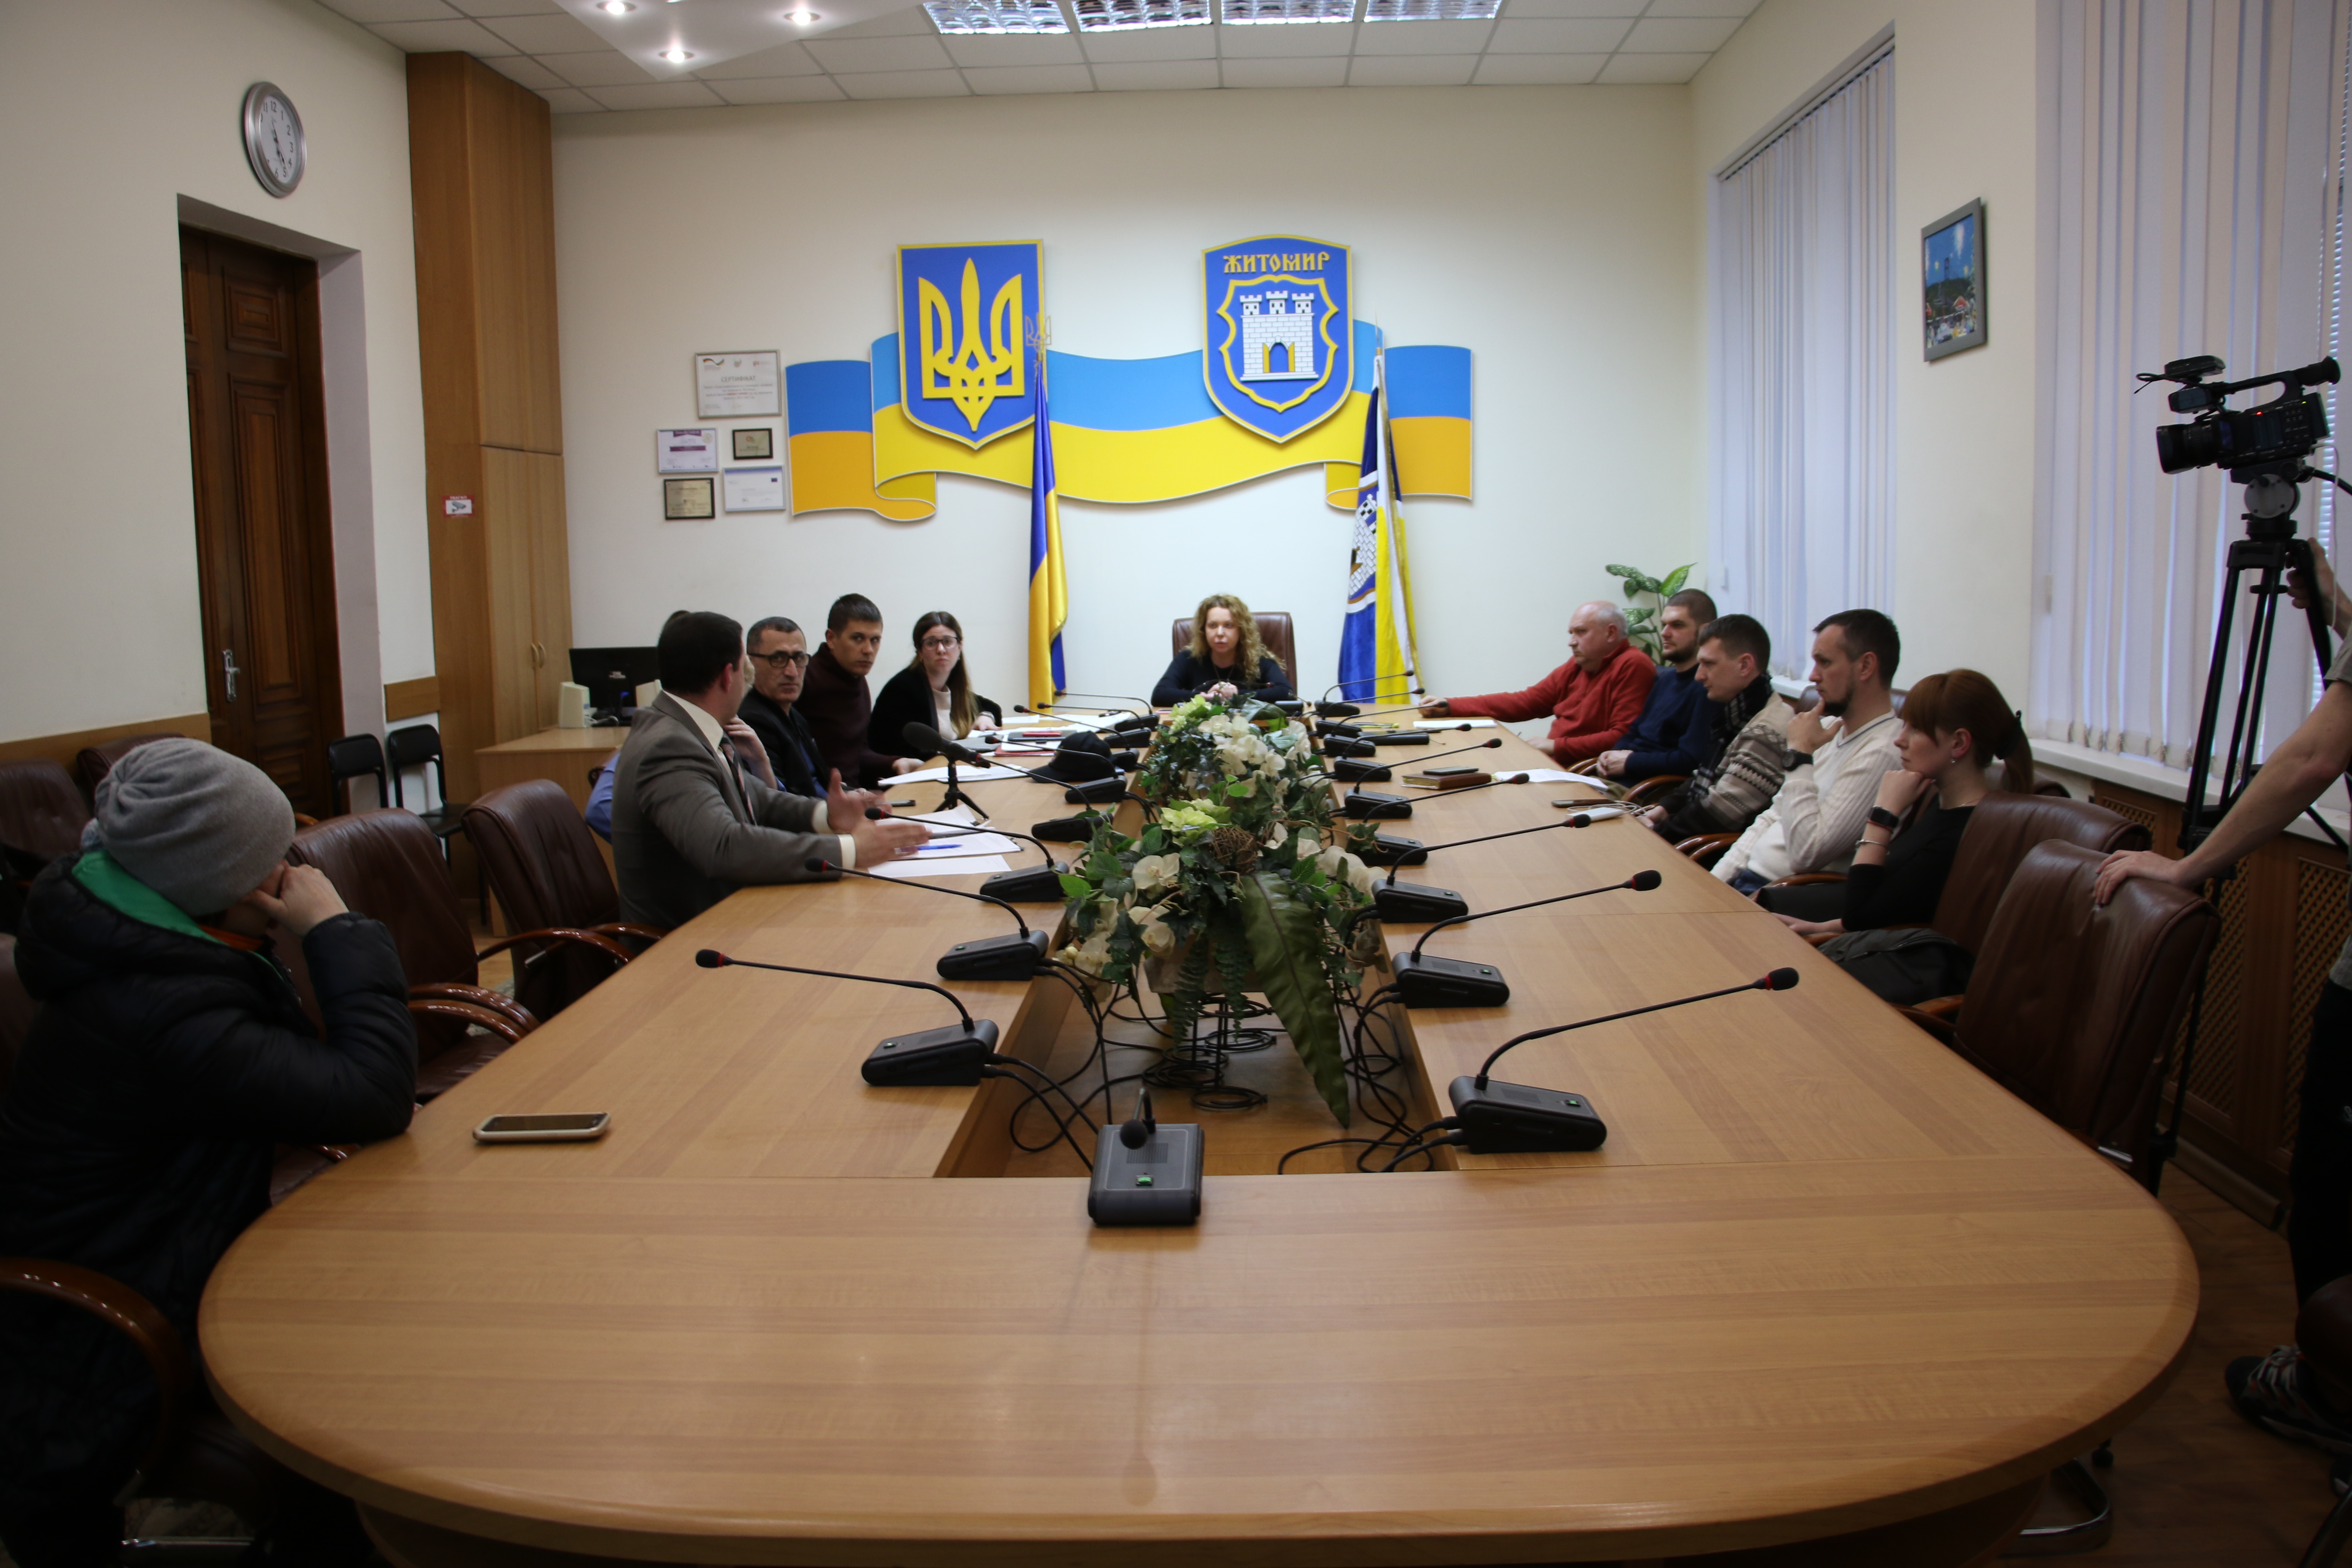 У Житомирі відбулись громадські обговорення щодо проекту Положення про бюджет участі Житомирської міської ОТГ